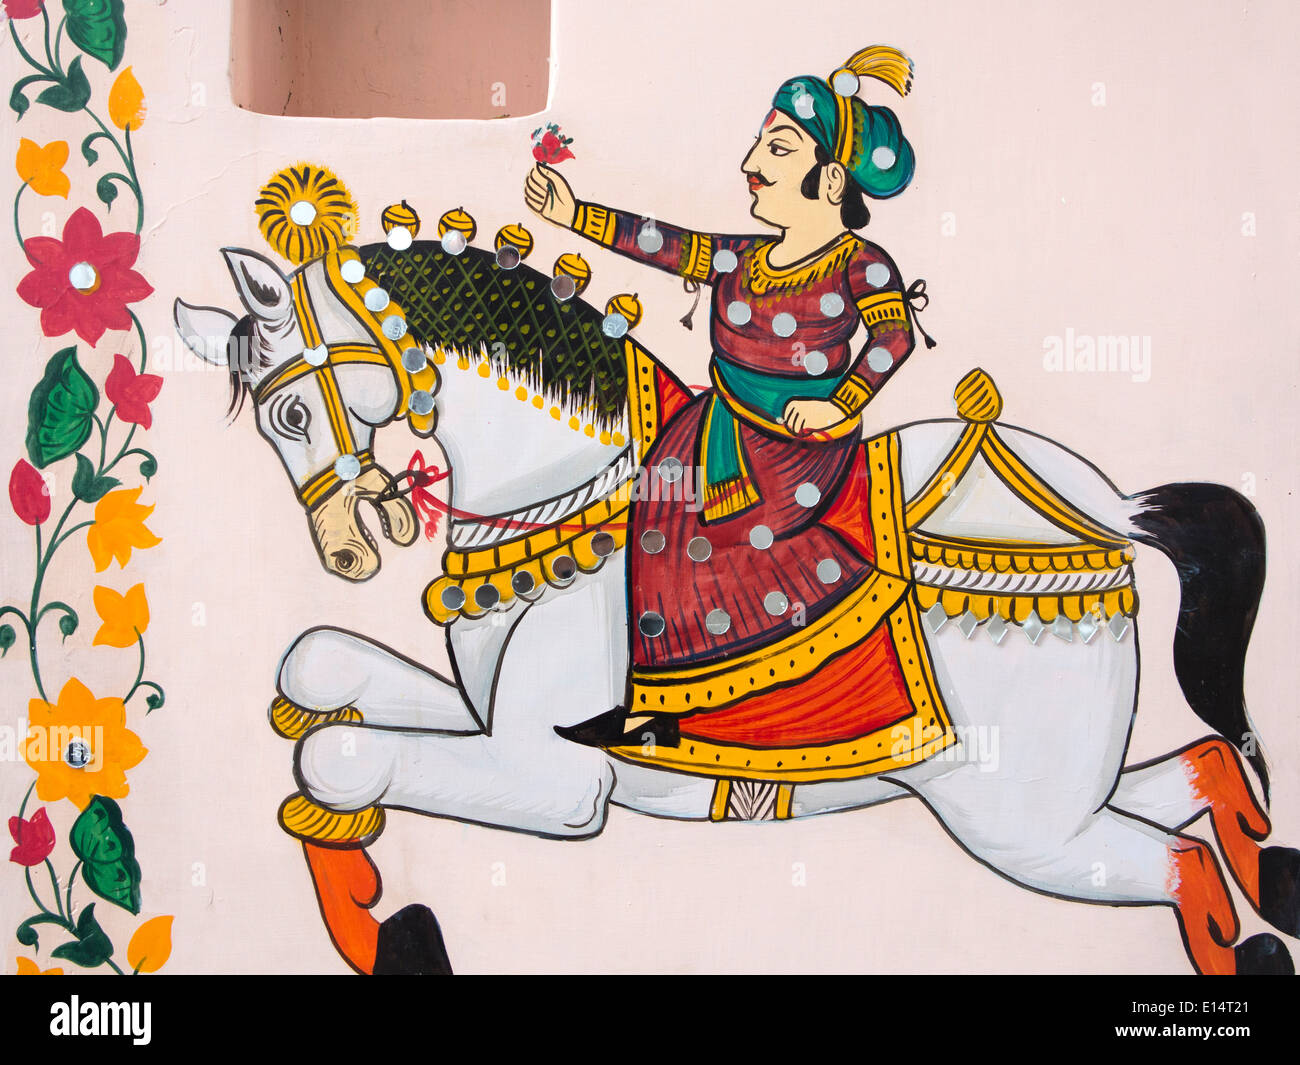 L'Inde, Rajasthan, Udaipur, Rajasthan, Art populaire de peinture murale sur l'homme Rajput avec fleur Banque D'Images